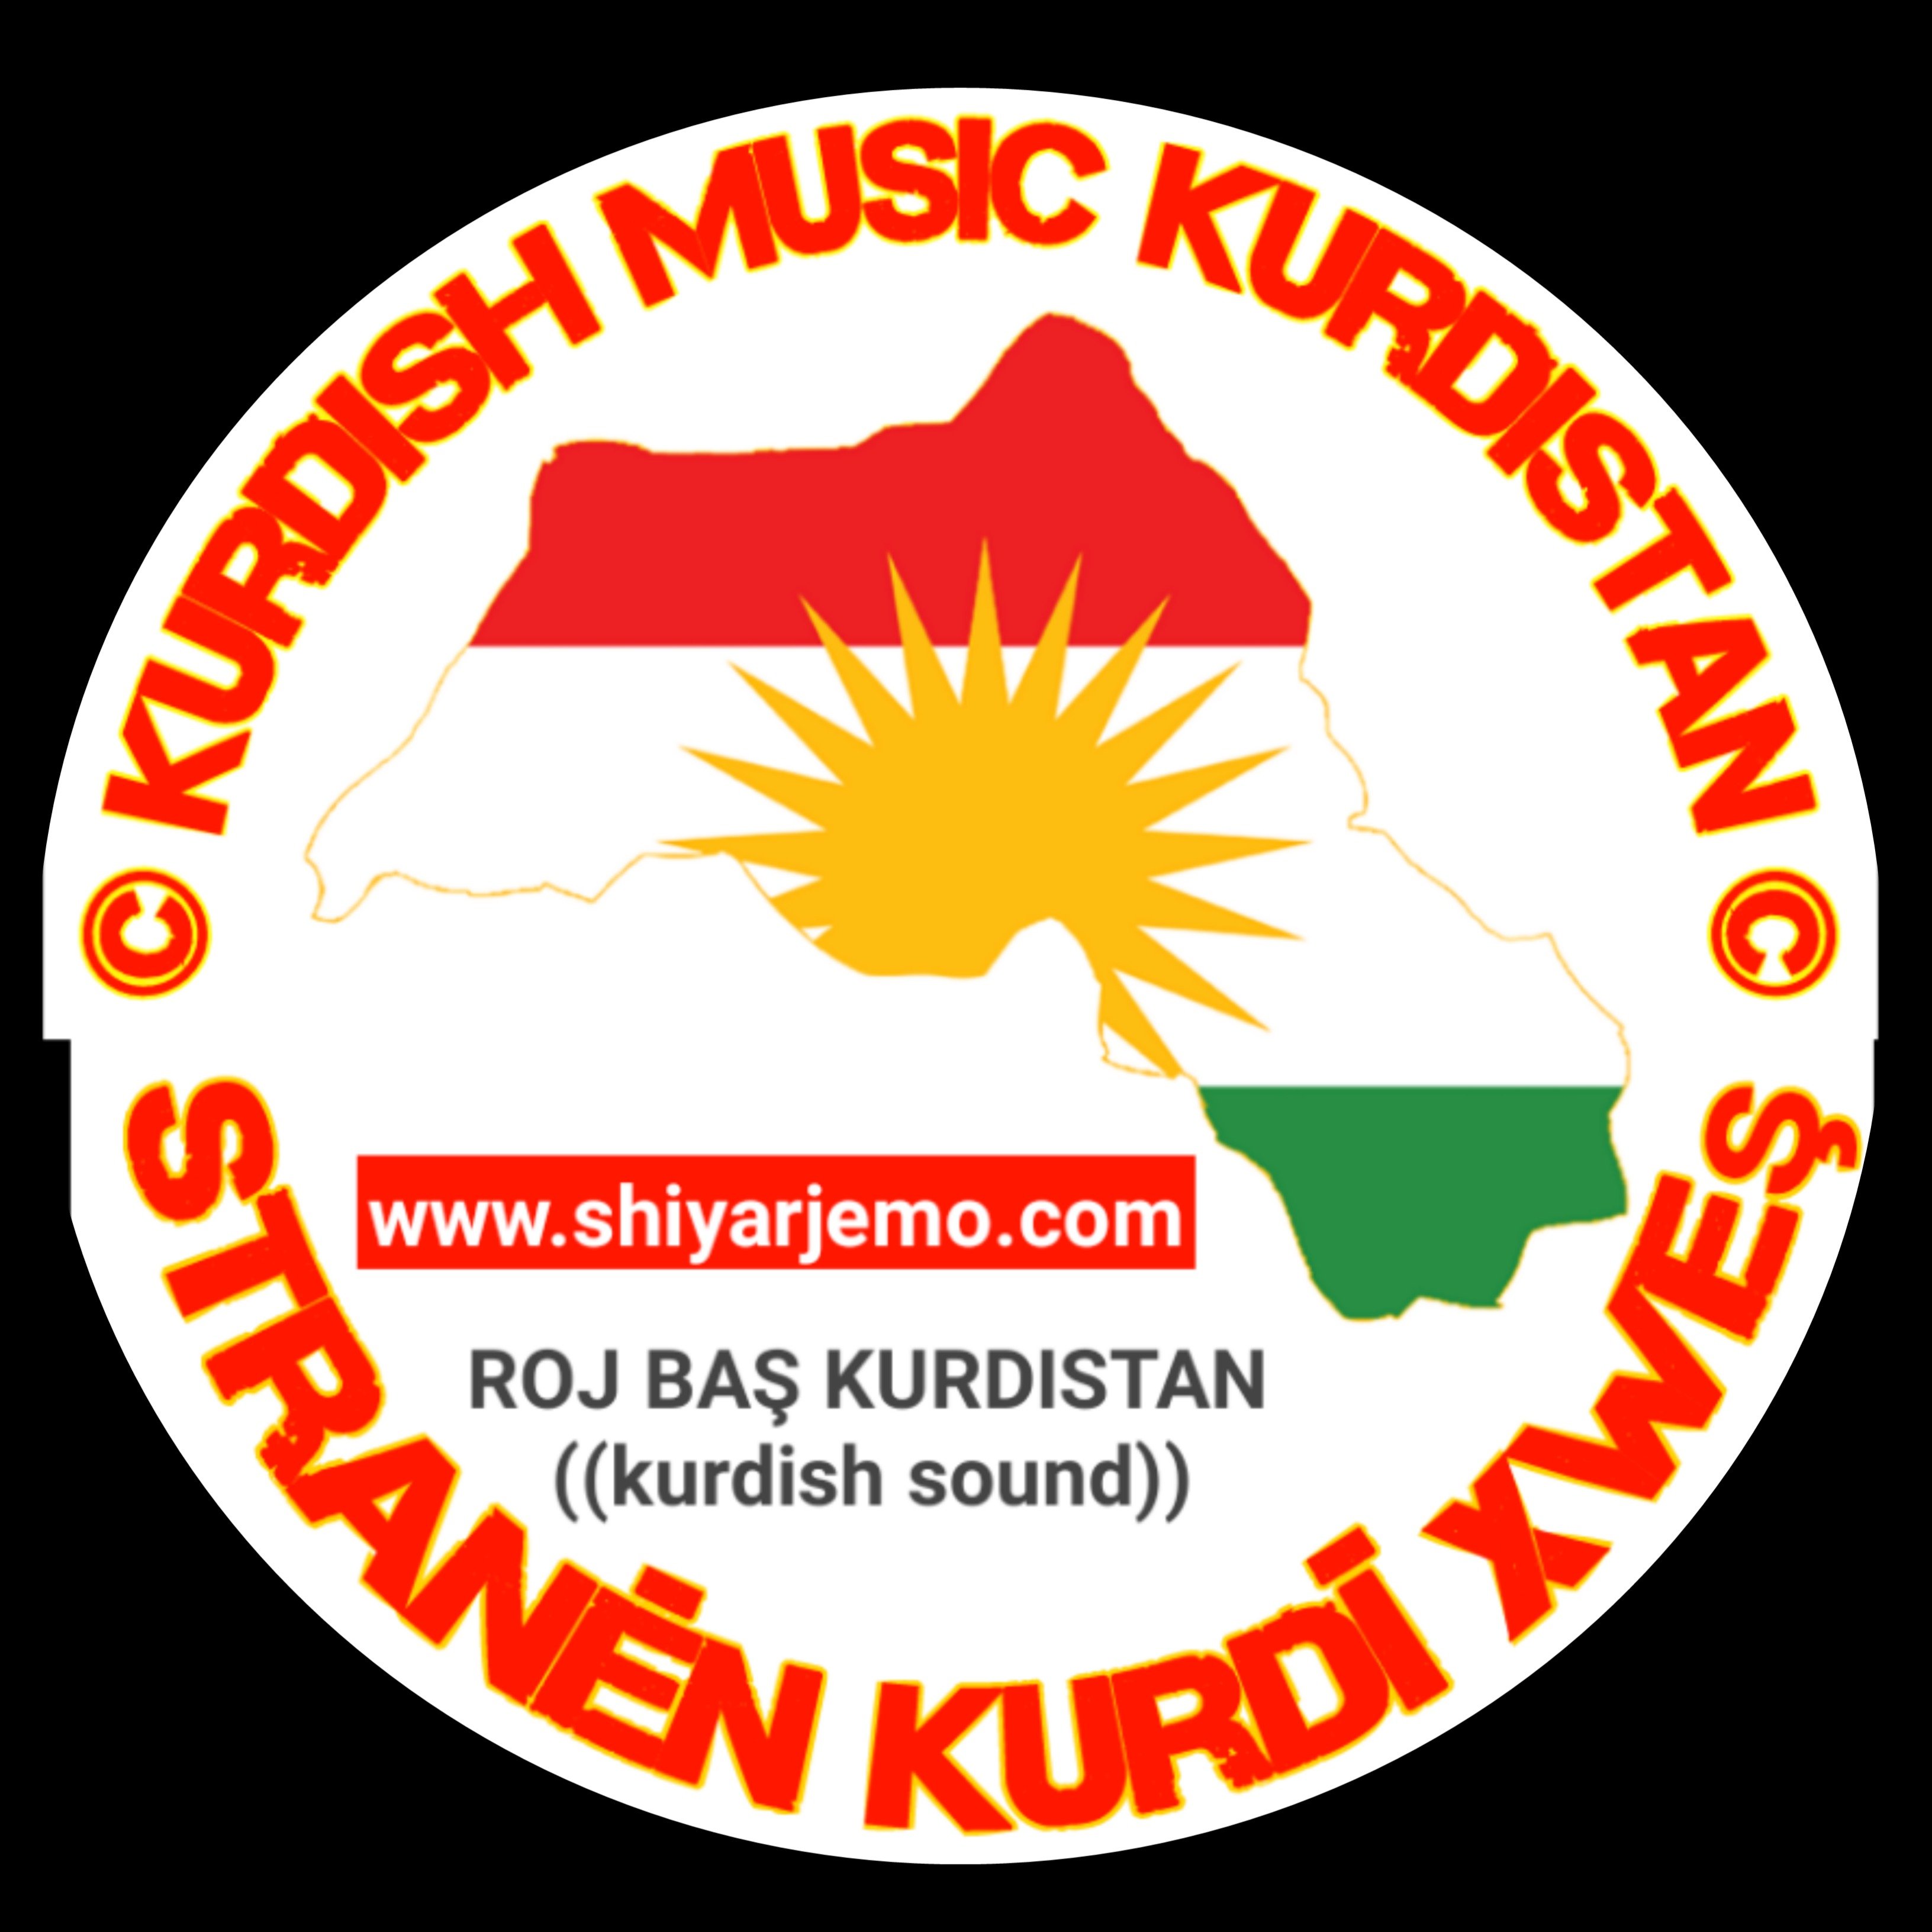 صوت كرد Kurdish Sounds On Twitter اغاني كردية الذي ابكت ملايين